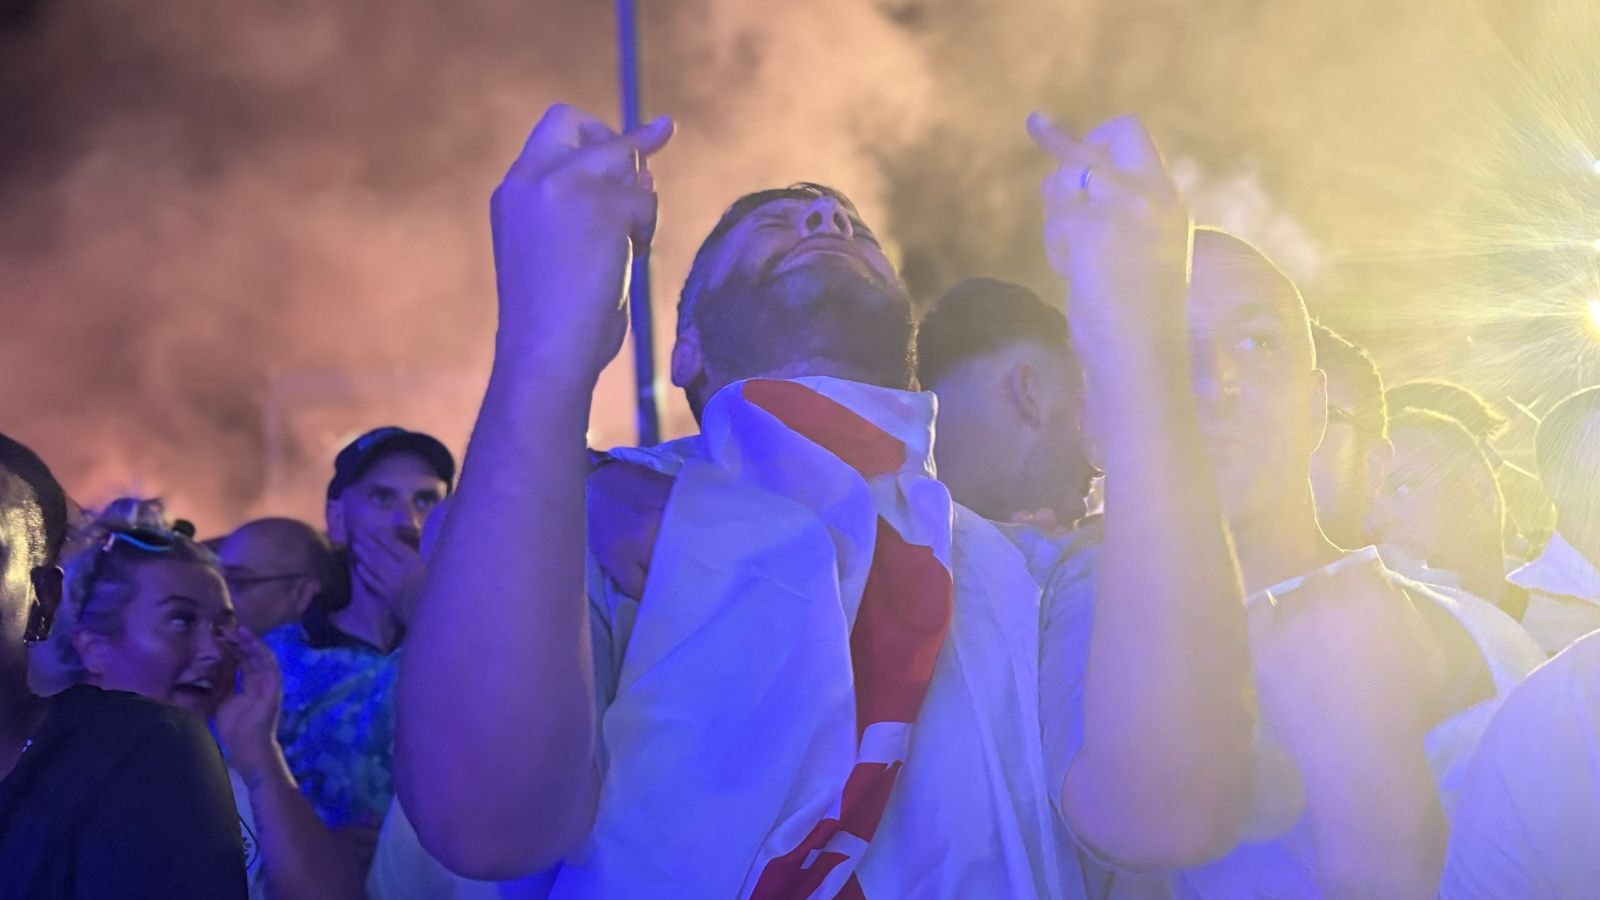 In Berlin's fan zones, England fans sang out until hope turned to heartbreak